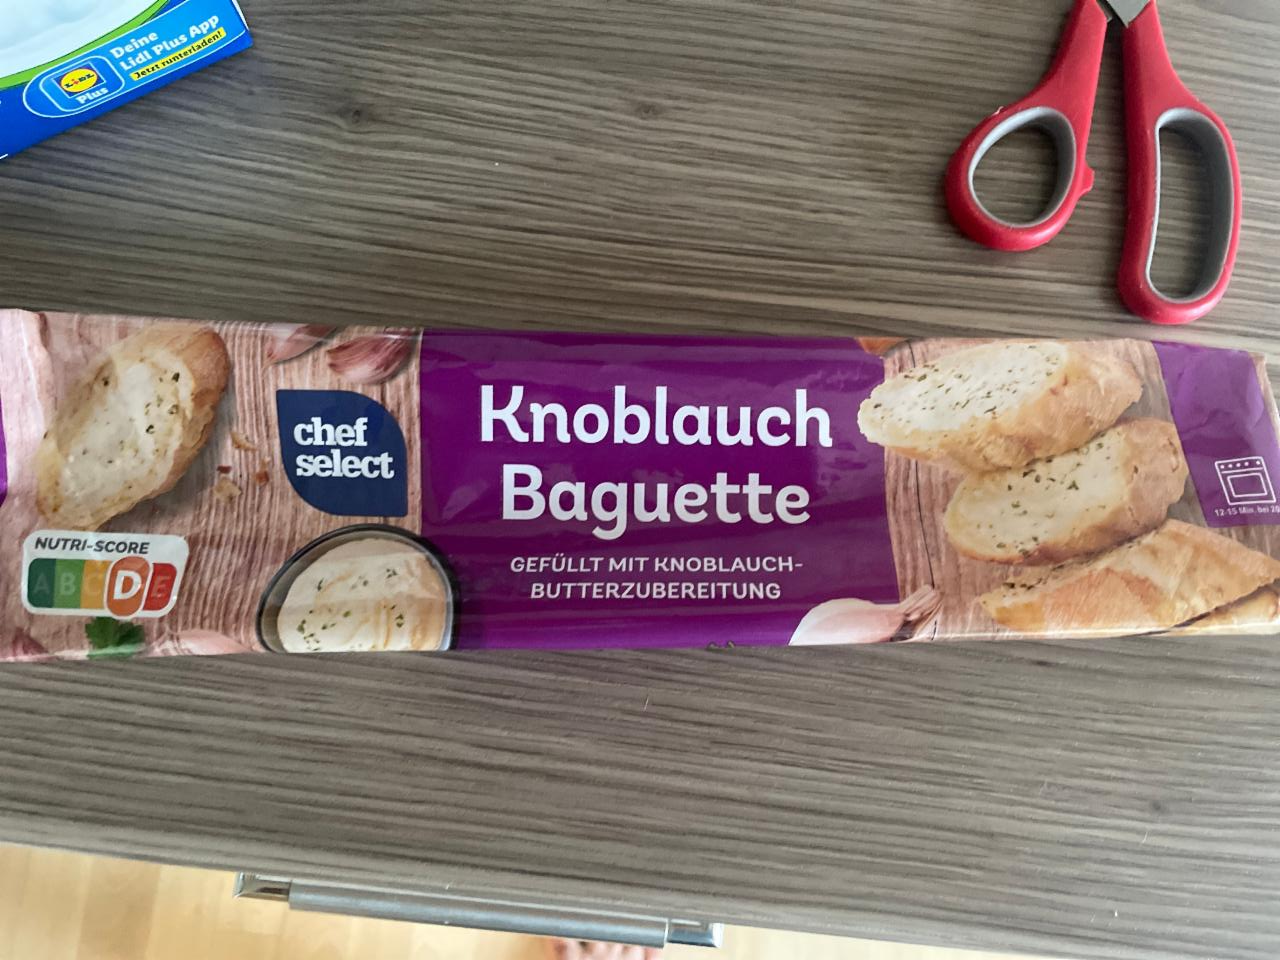 Knolauch - ценность Select калорийность, ⋙ Baguette Chef пищевая